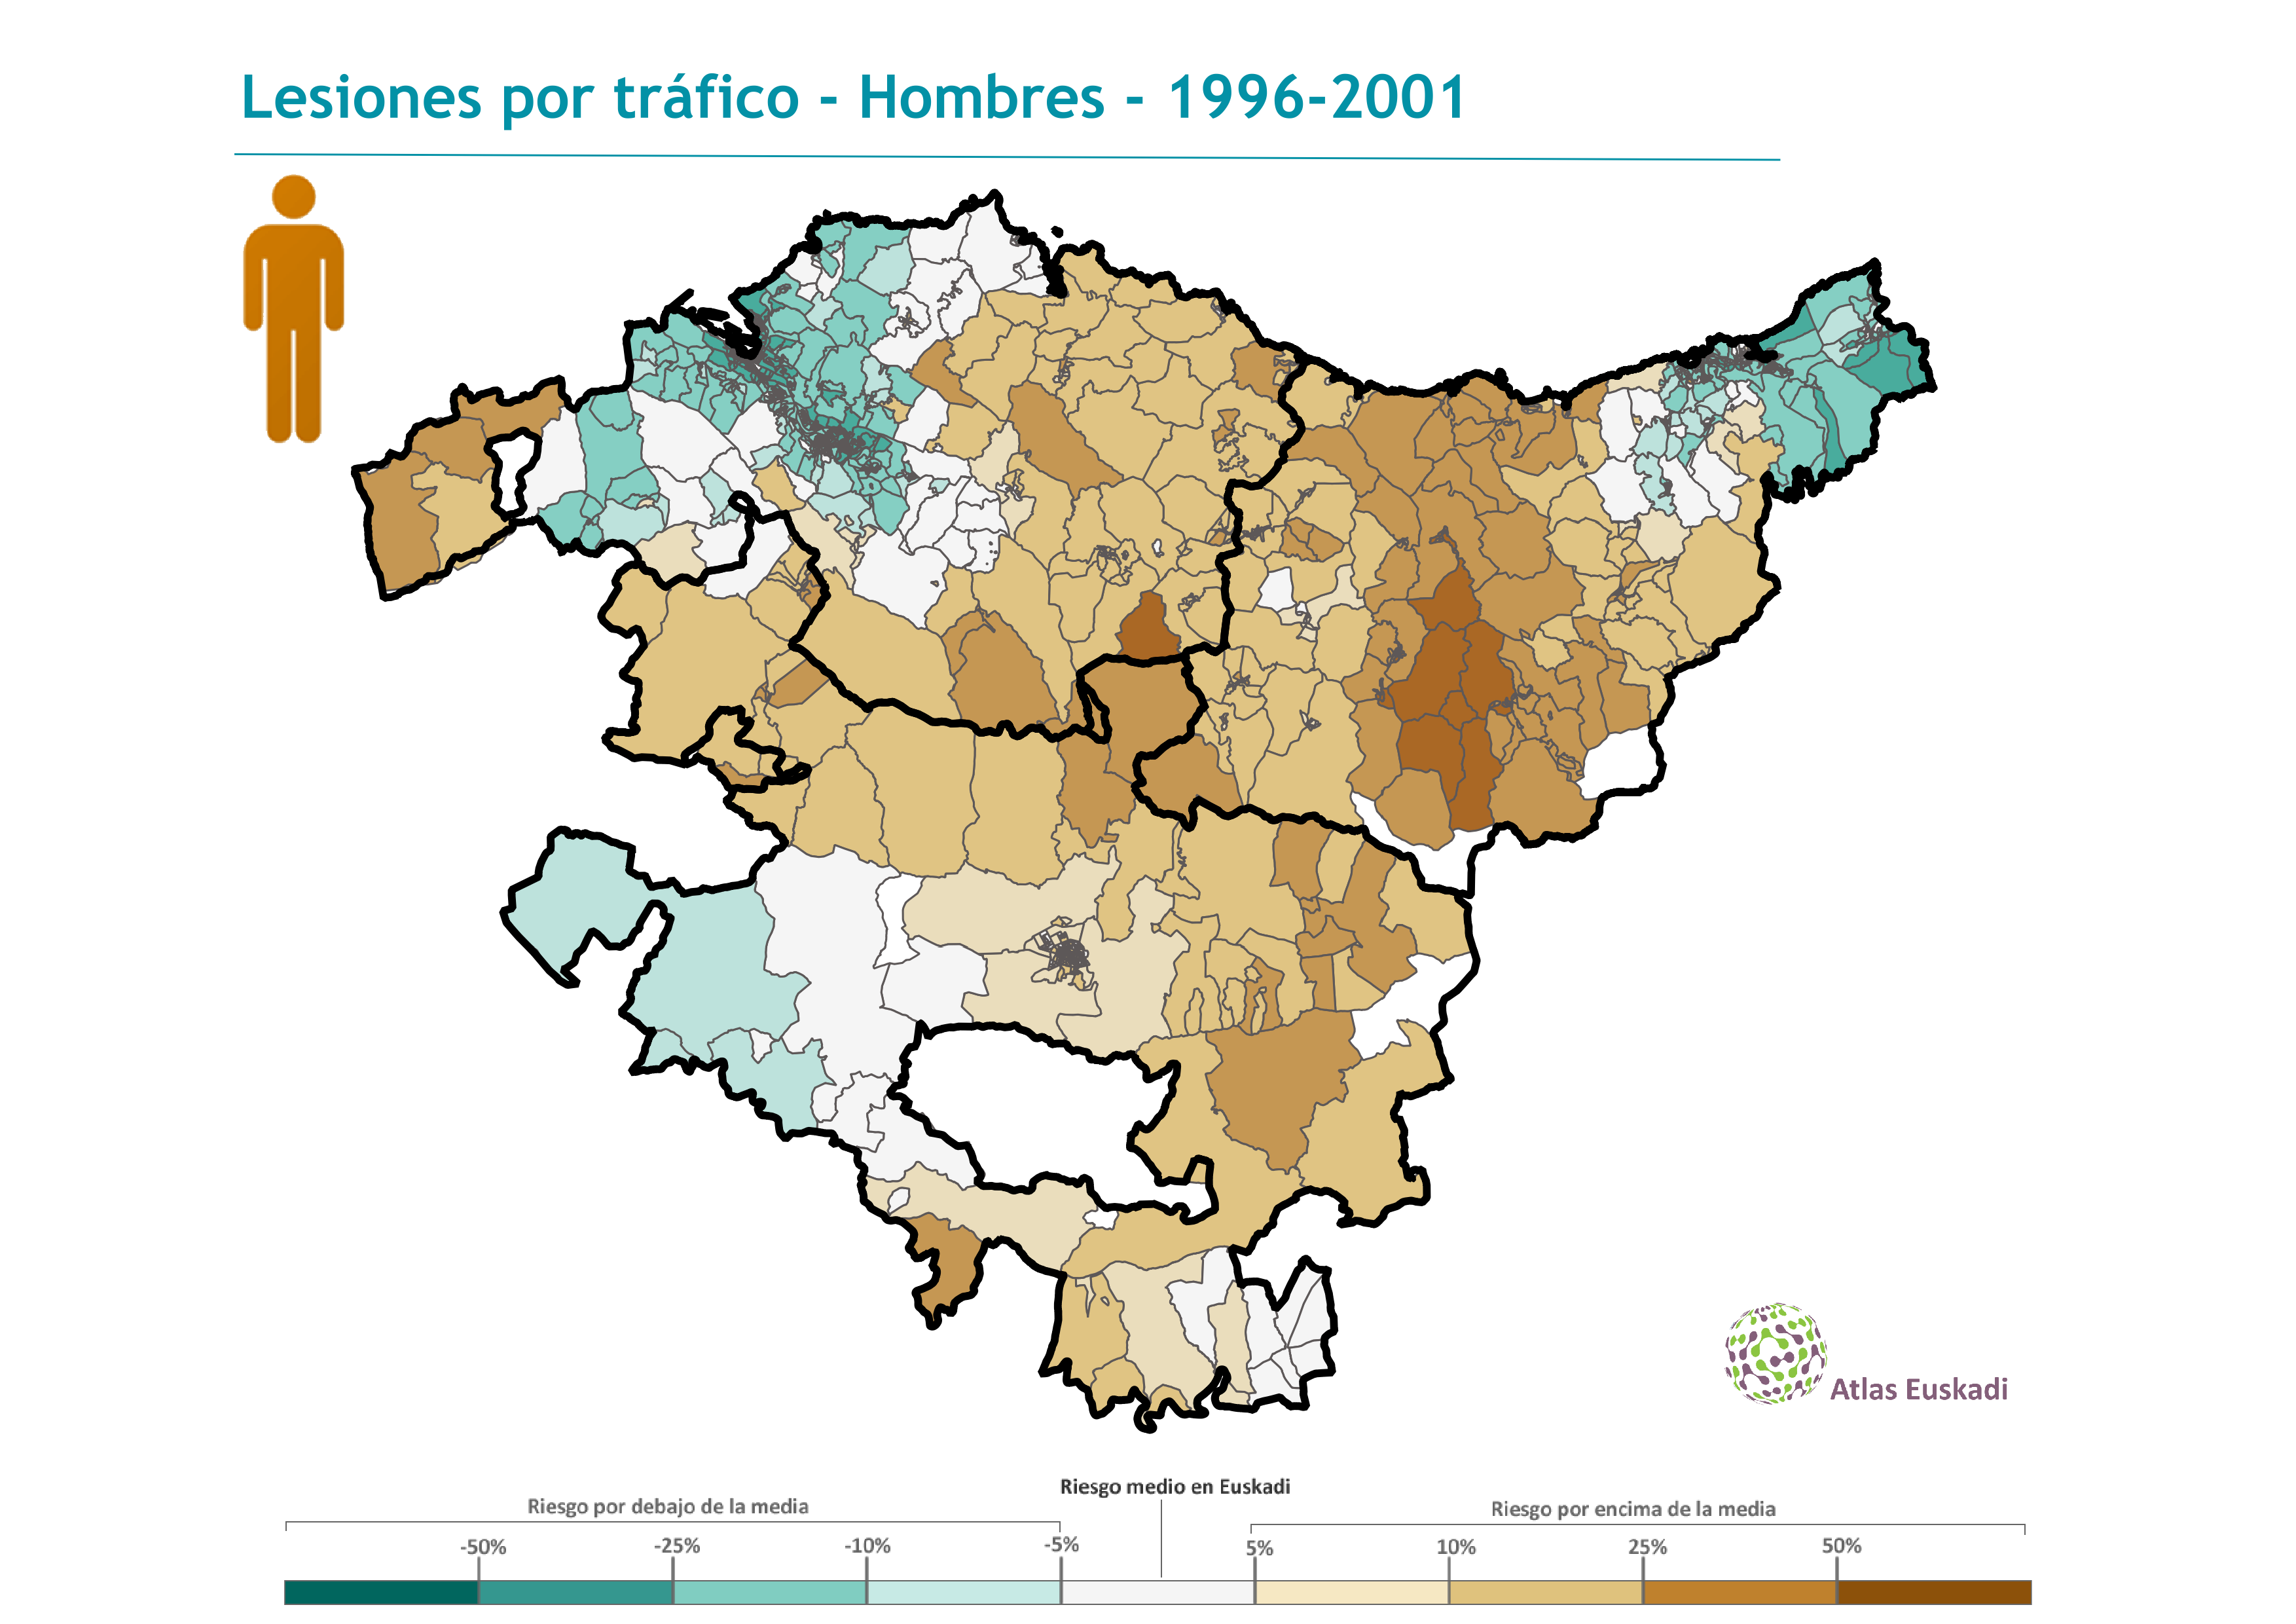 Lesiones por tráfico hombres  1996-2001 Euskadi